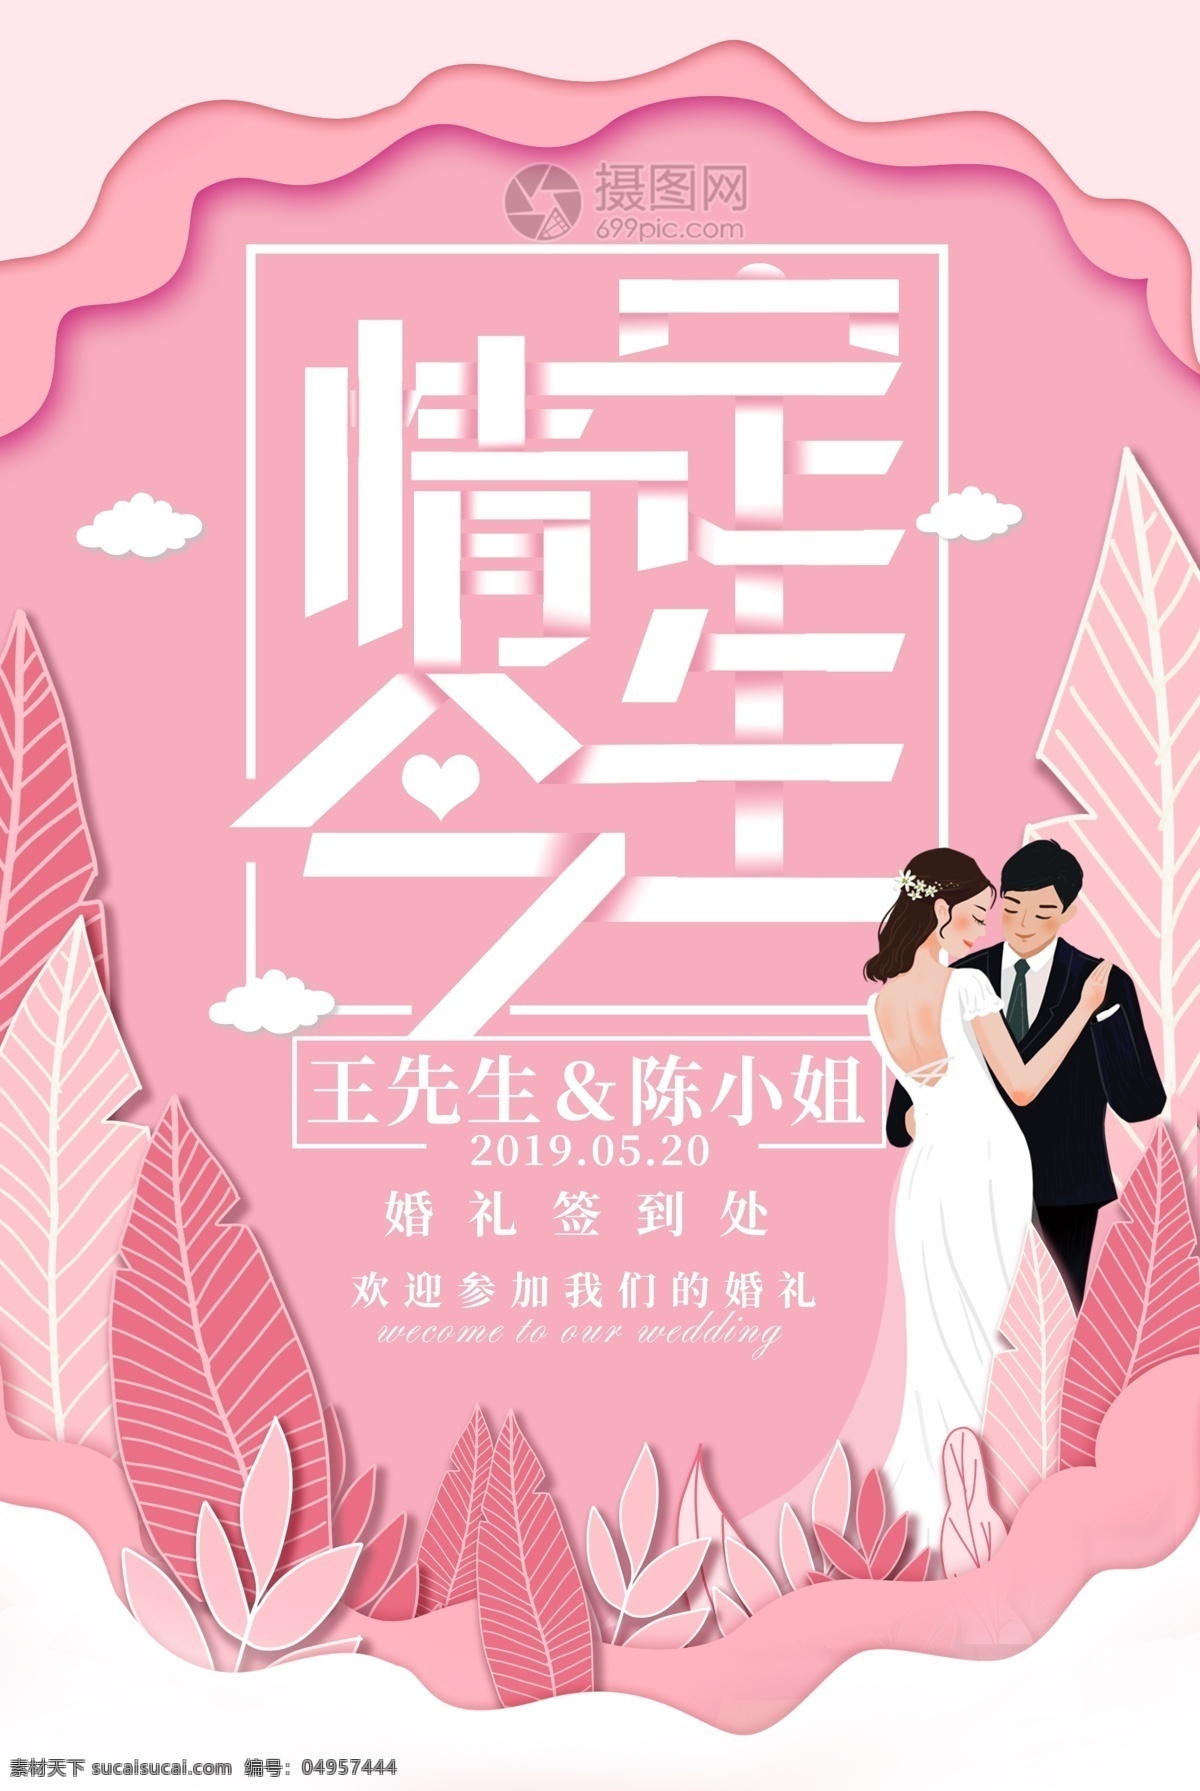 粉色 浪漫婚礼 宣传海报 浪漫 新娘 新郎 插画 手绘 剪纸 宣传 创意 海报 婚庆 婚礼 结婚